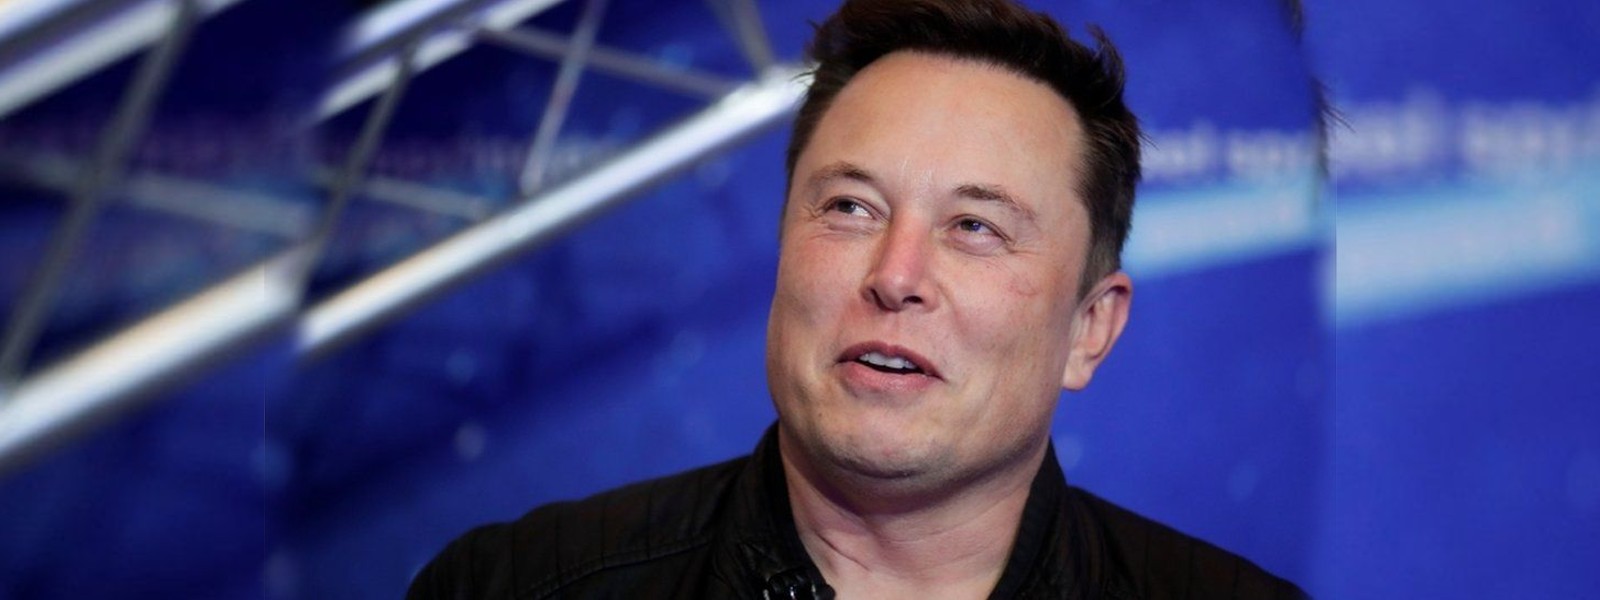 ட்விட்டர் நிறுவனத்தை தன்வசப்படுத்தவுள்ள Elon Musk